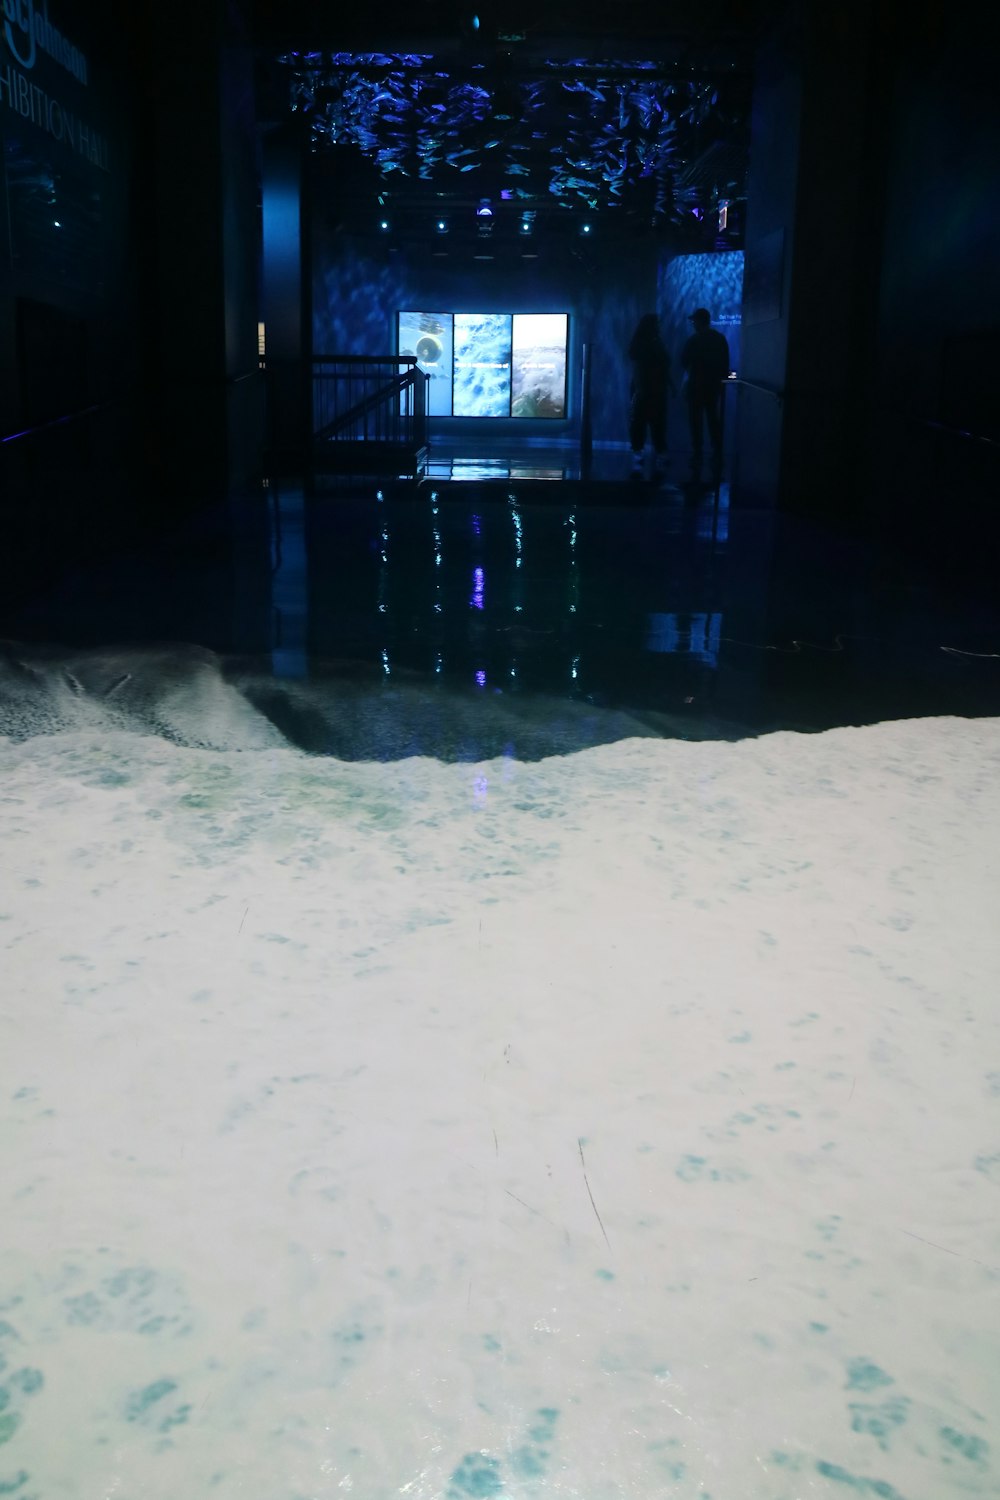 바닥에 많은 양의 물이 있는 방